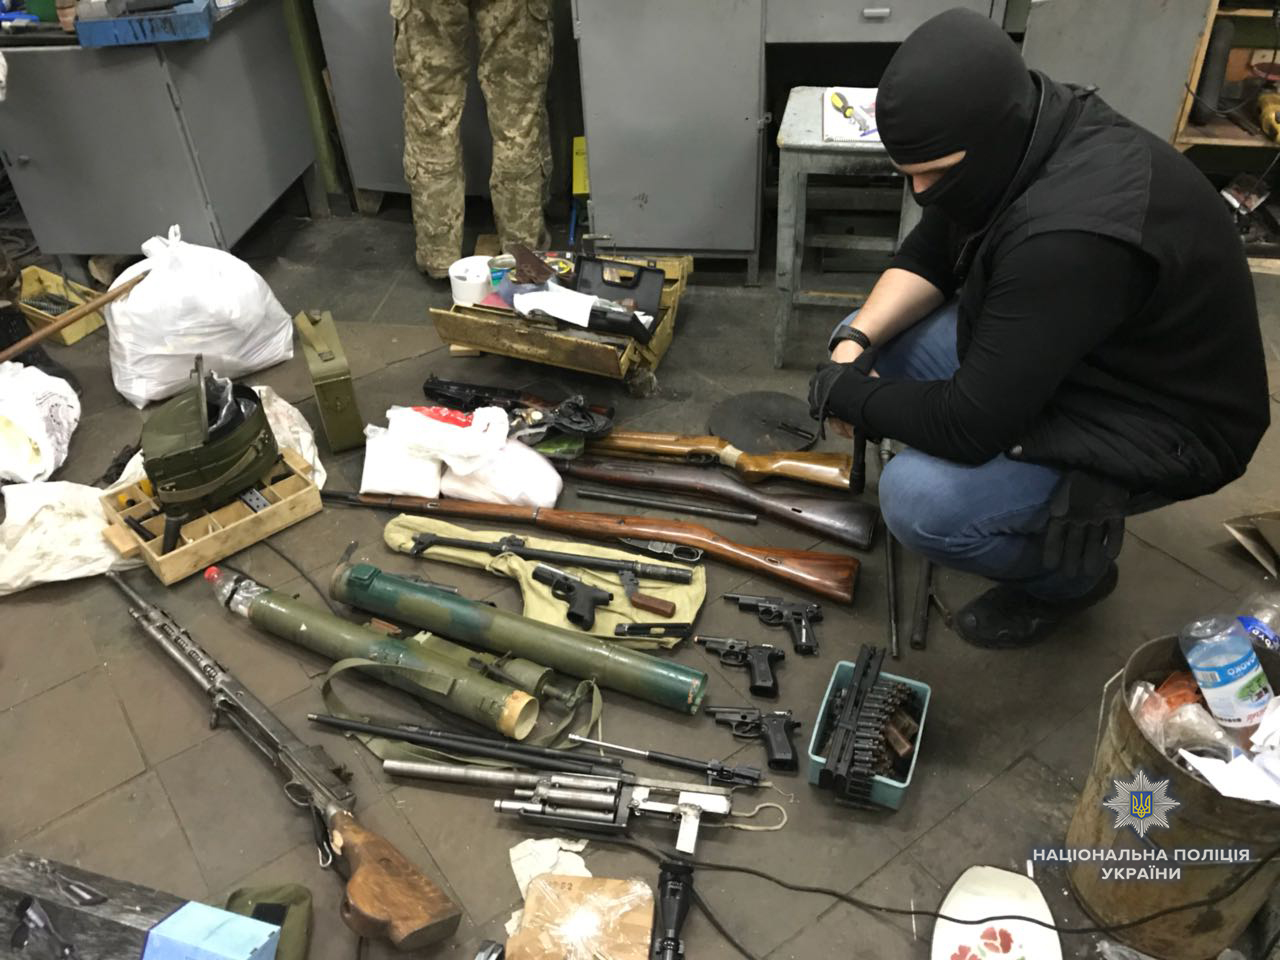 Правоохранители изъяли в Киеве 14 тыс. патронов, огнеметы и взрывчатку (фото, видео)